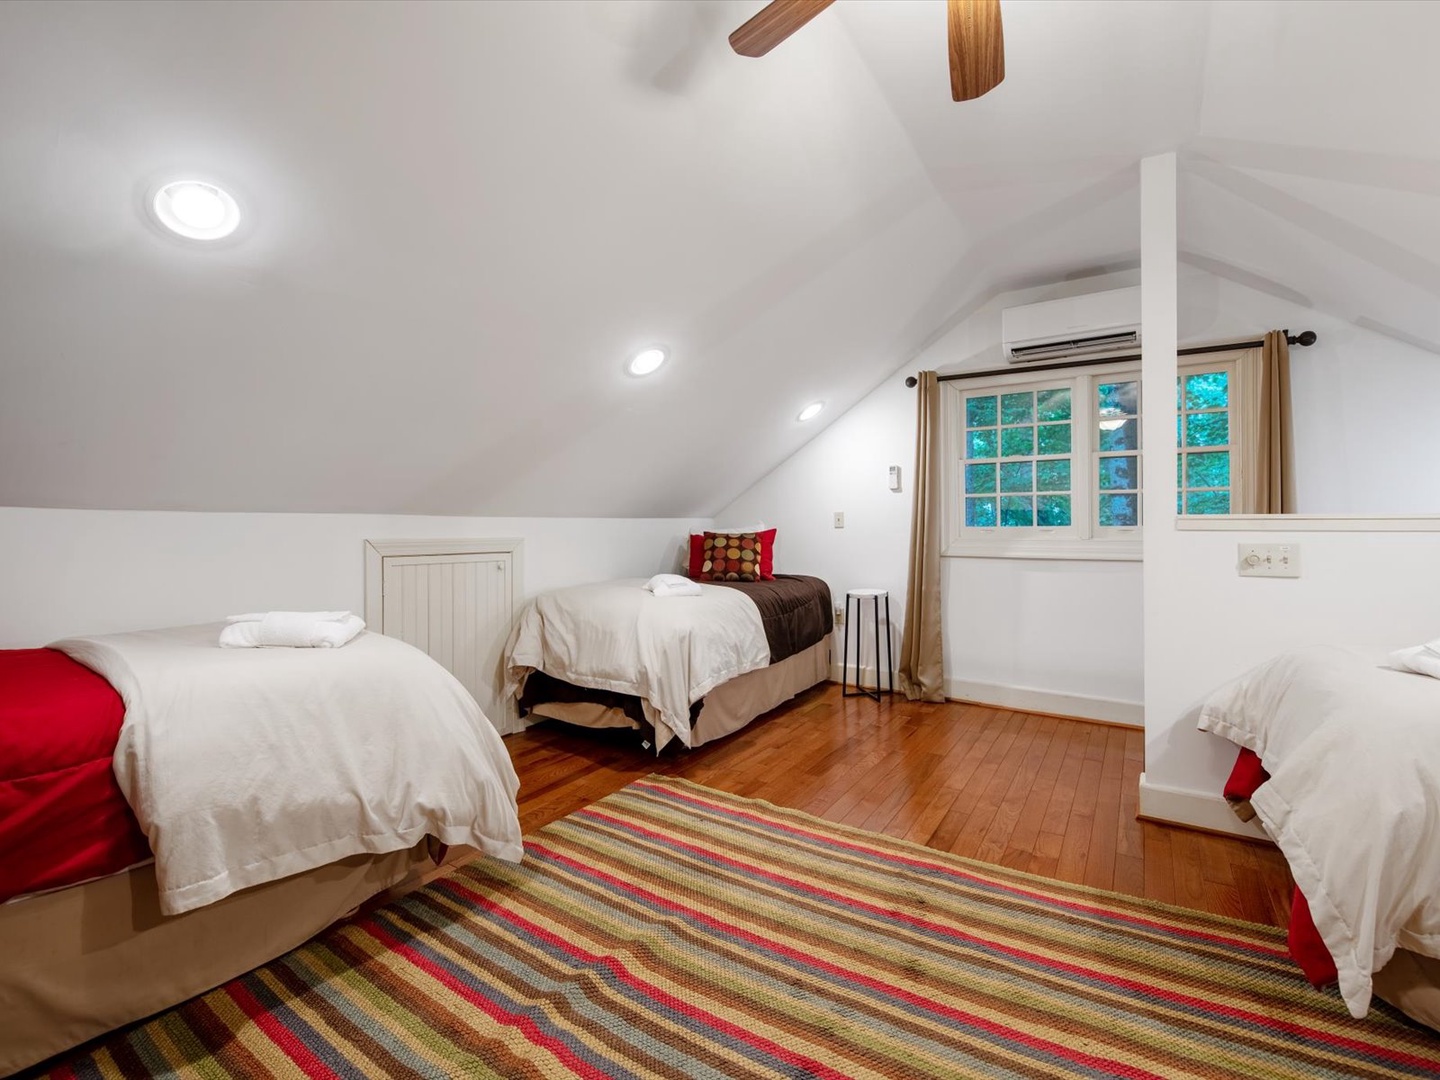 Gleesome Inn- Guest house shared bedroom